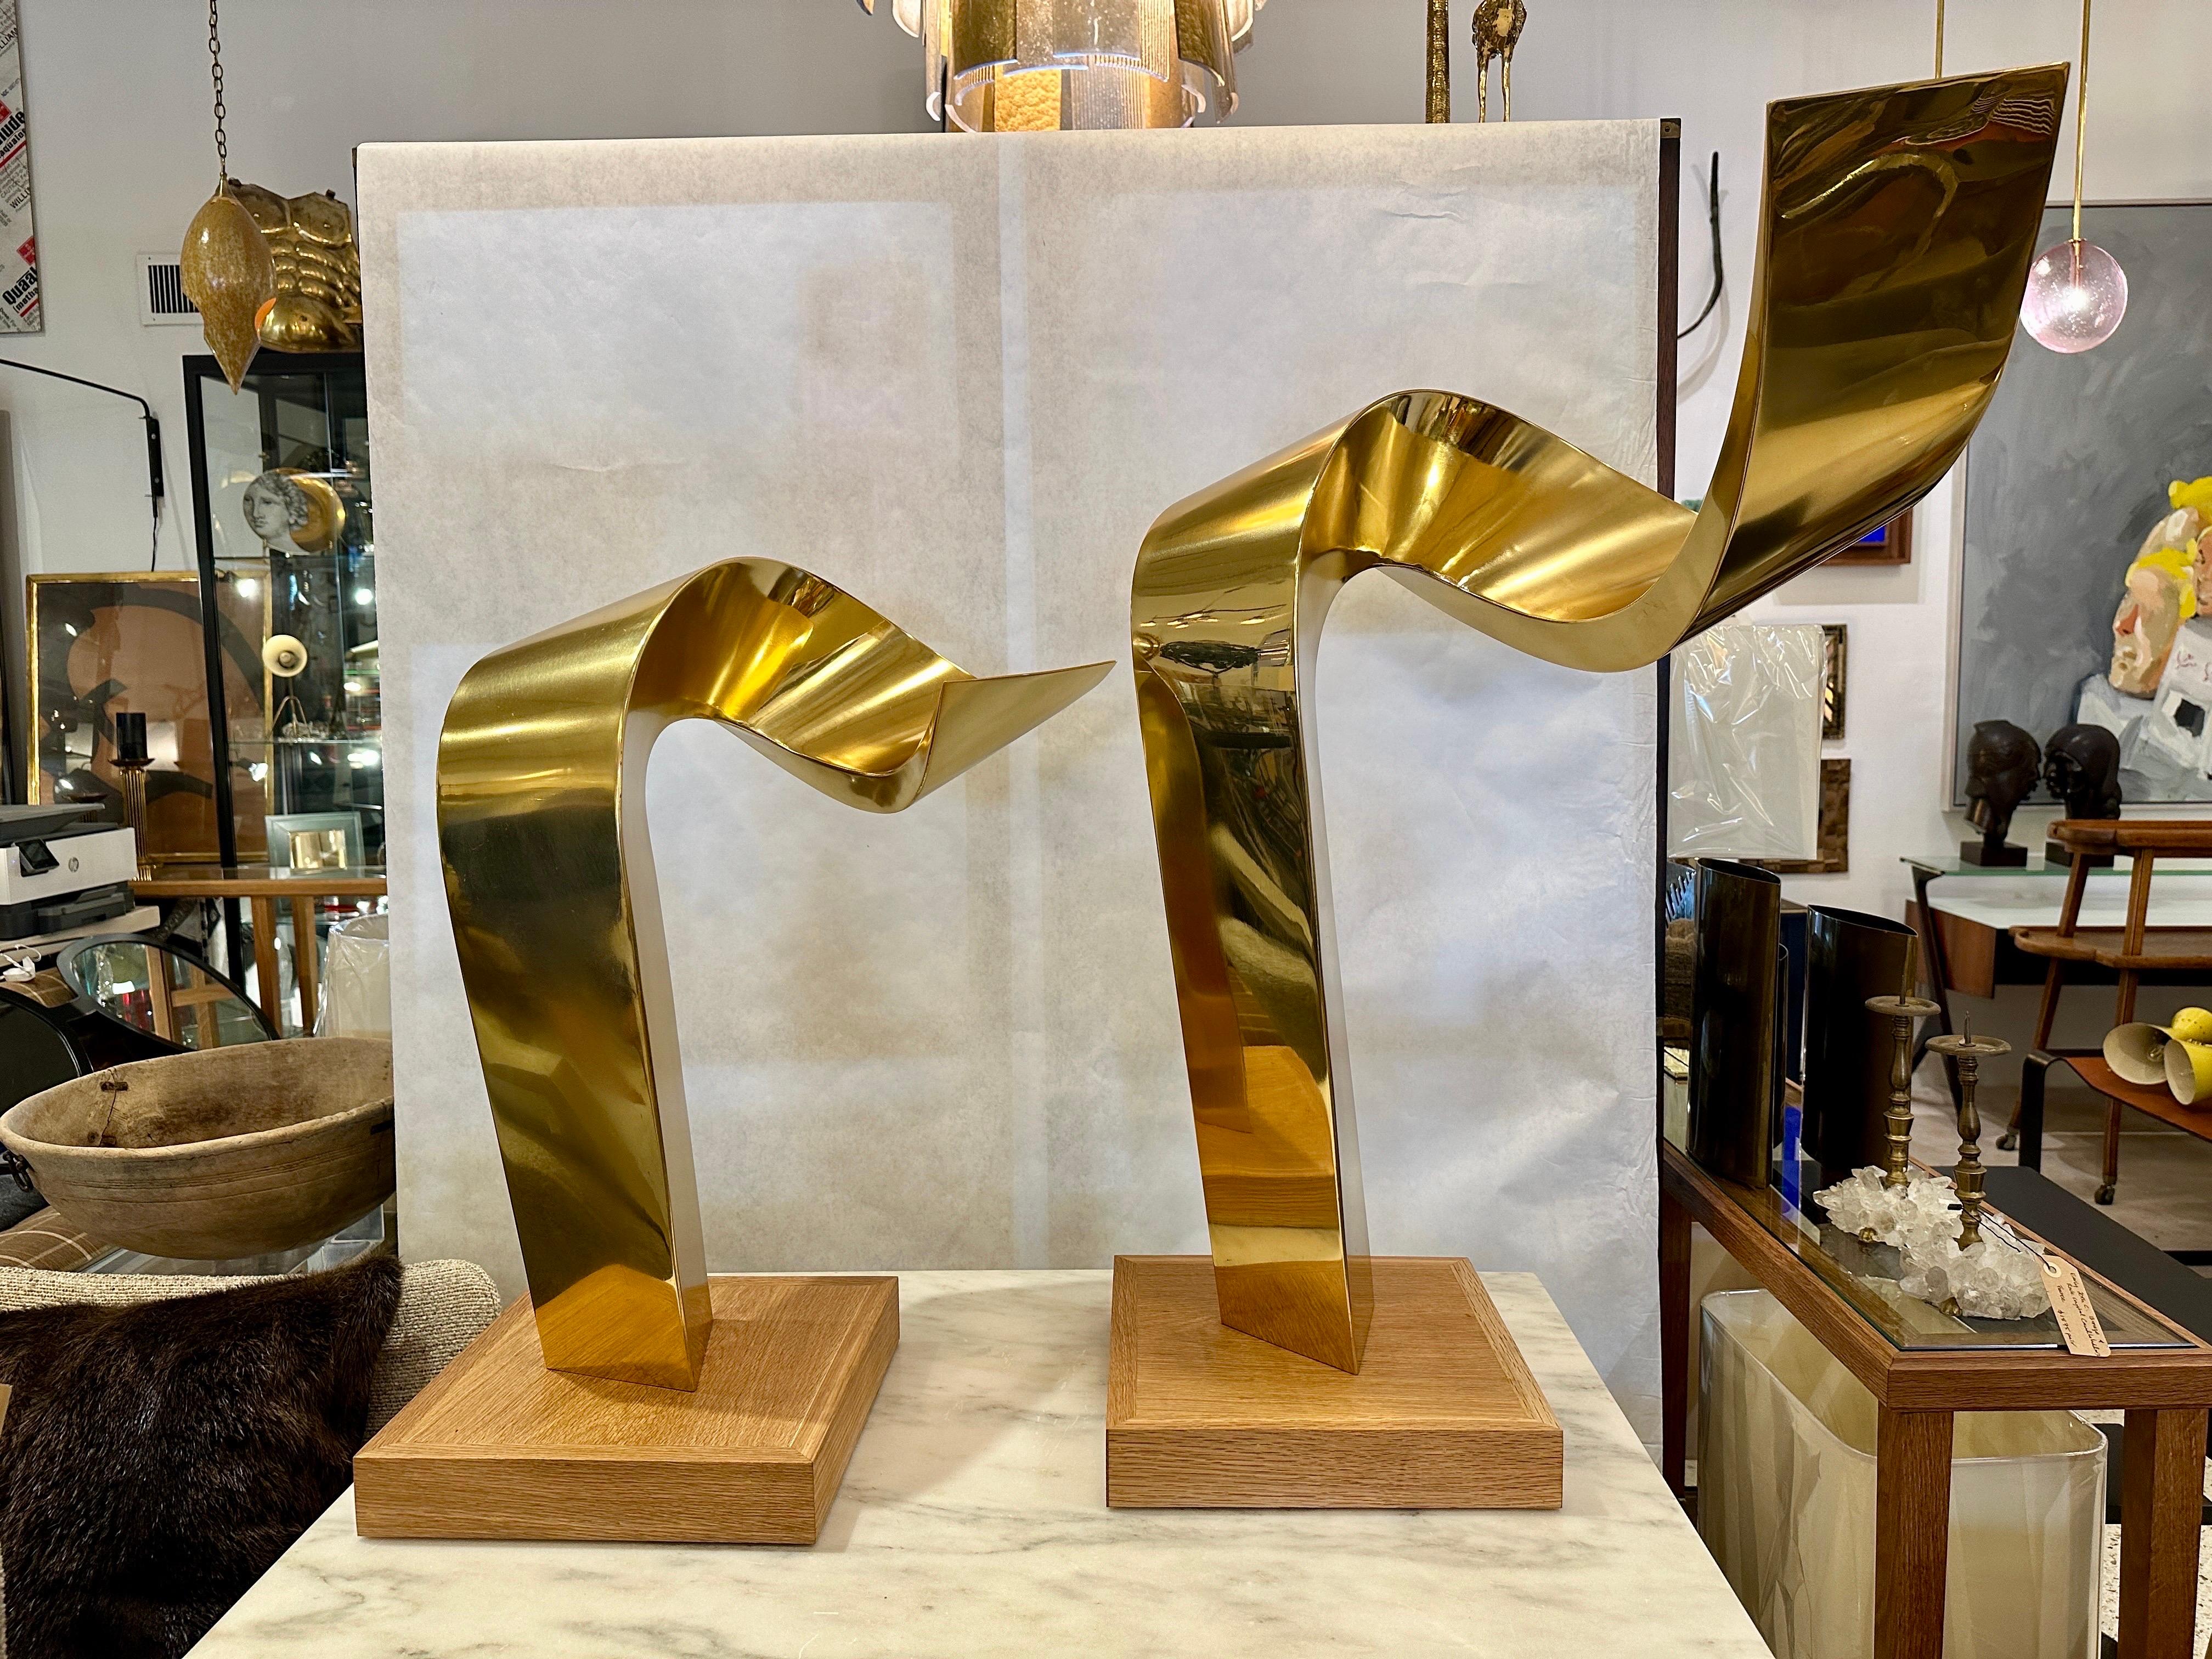 Ces magnifiques sculptures abstraites en laiton de Jean-Claude Hug, France (né en 1939), sont vendues ensemble.  HUG est connu pour ses sculptures en métal. Ces deux pièces incurvées en laiton peuvent être exposées ensemble ou séparément.  Signé